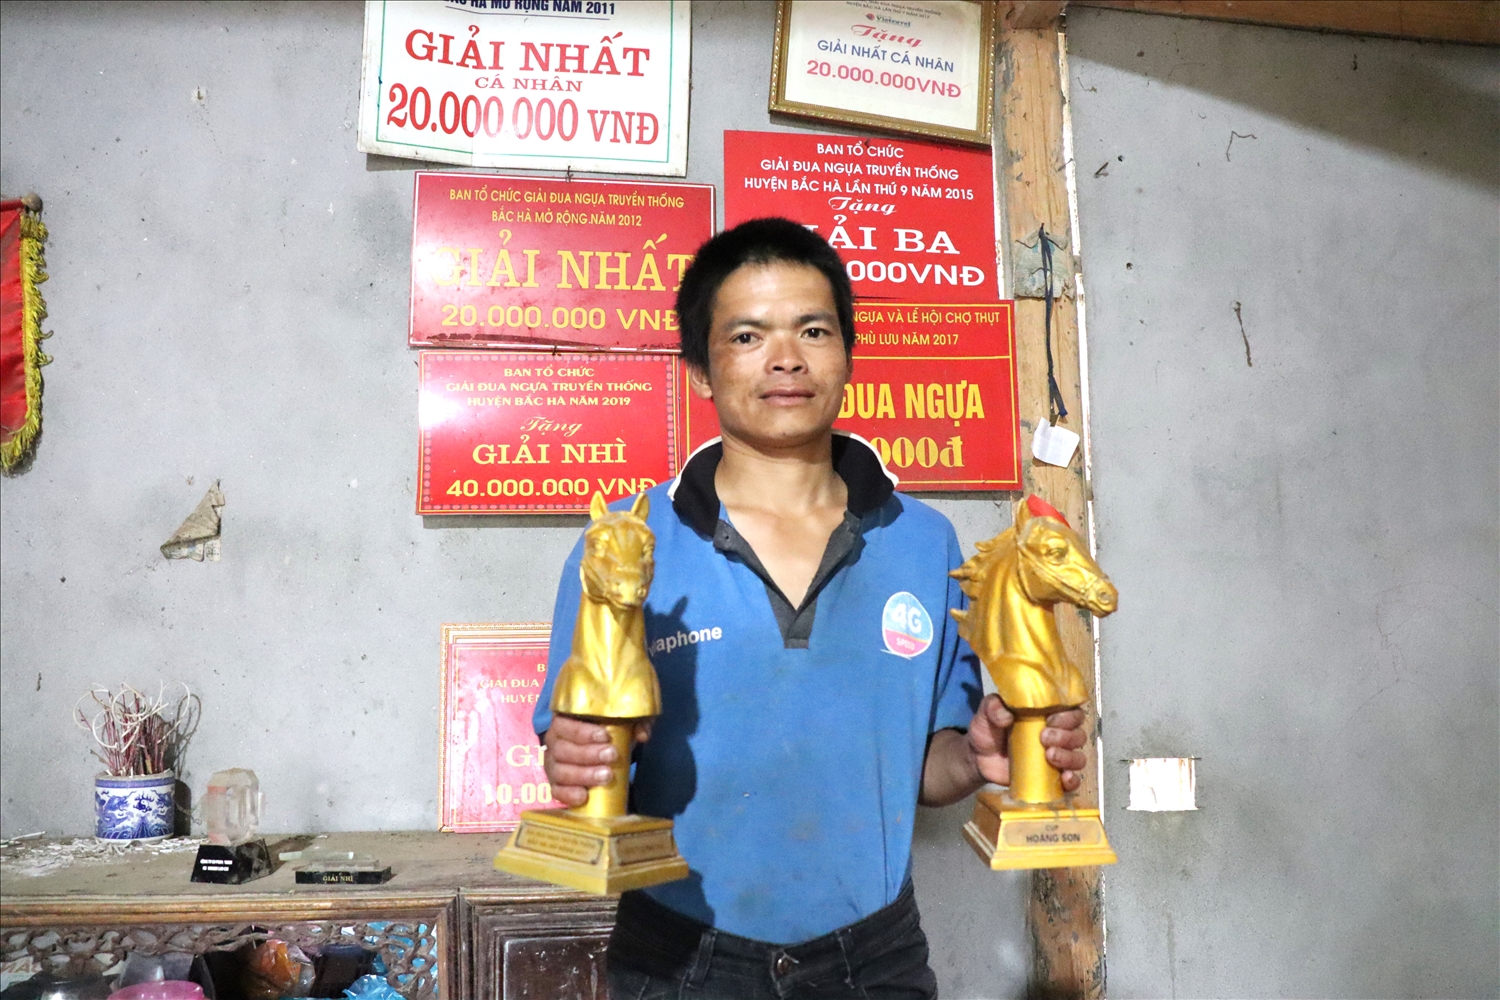 Ông Vàng Văn Huỳnh, xã Na Hối (Bắc Hà, Lào Cai), người giữ kỷ lục 3 năm liên tiếp (2011-2012-2013) 